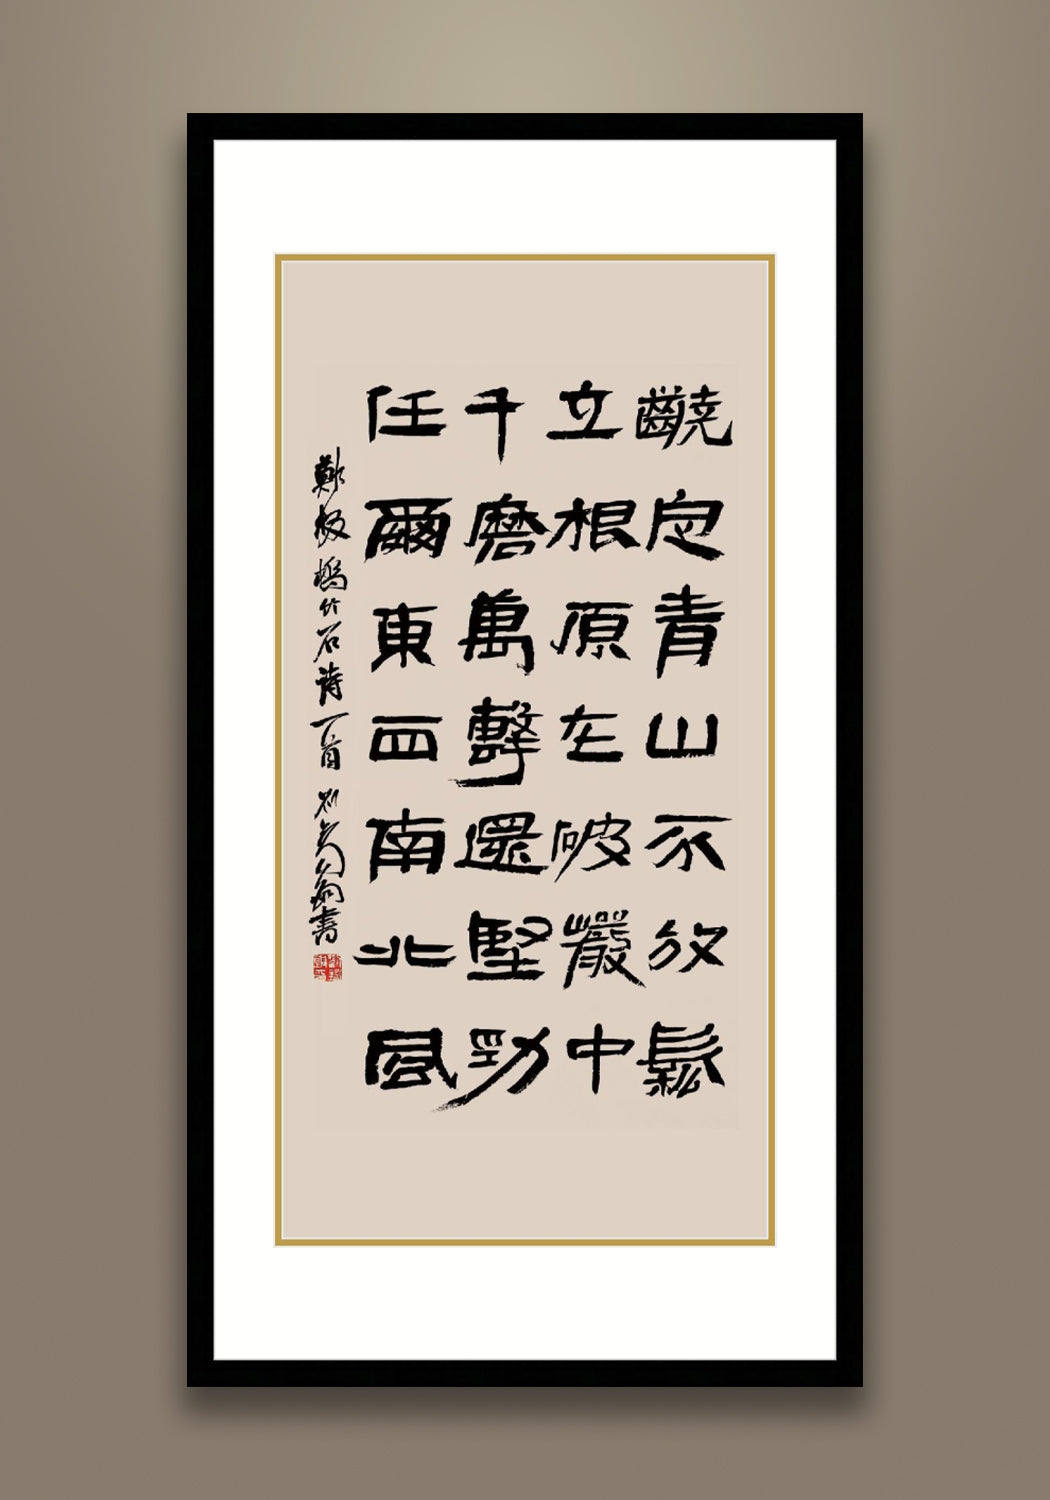 Zheng Banqiao Poem